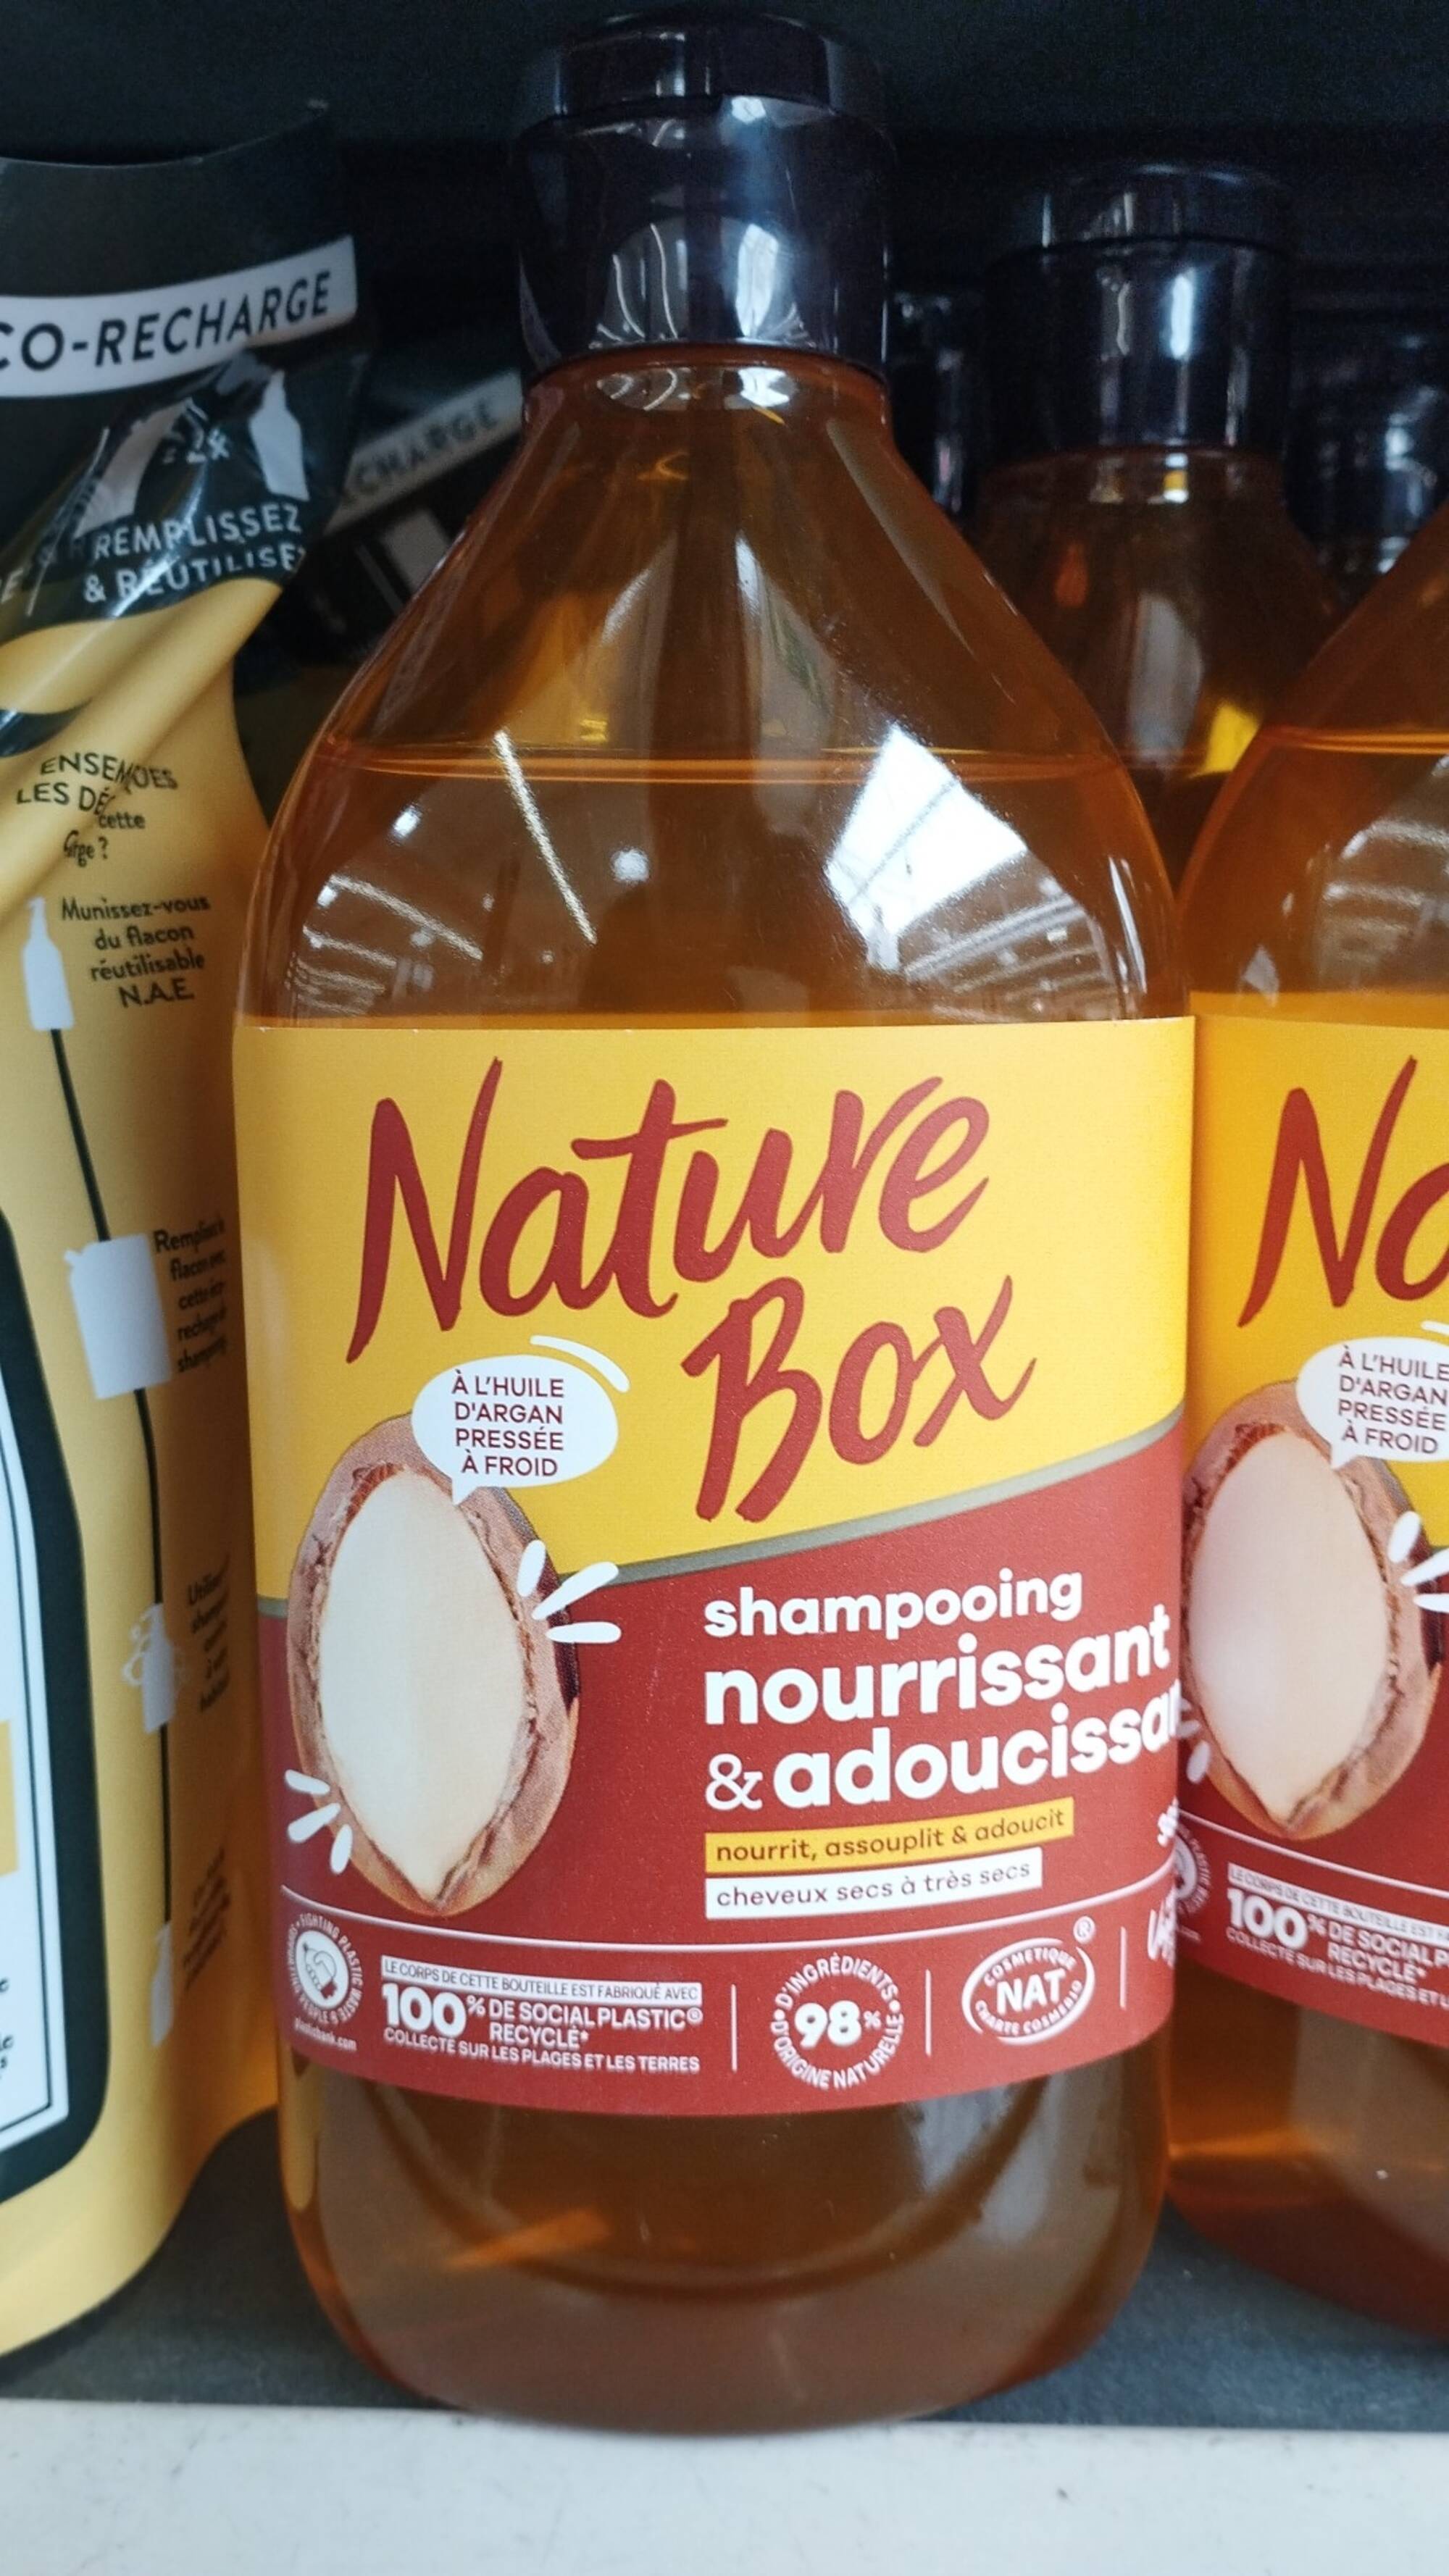 NATURE BOX - Shampooing nourrissant & adoucissant